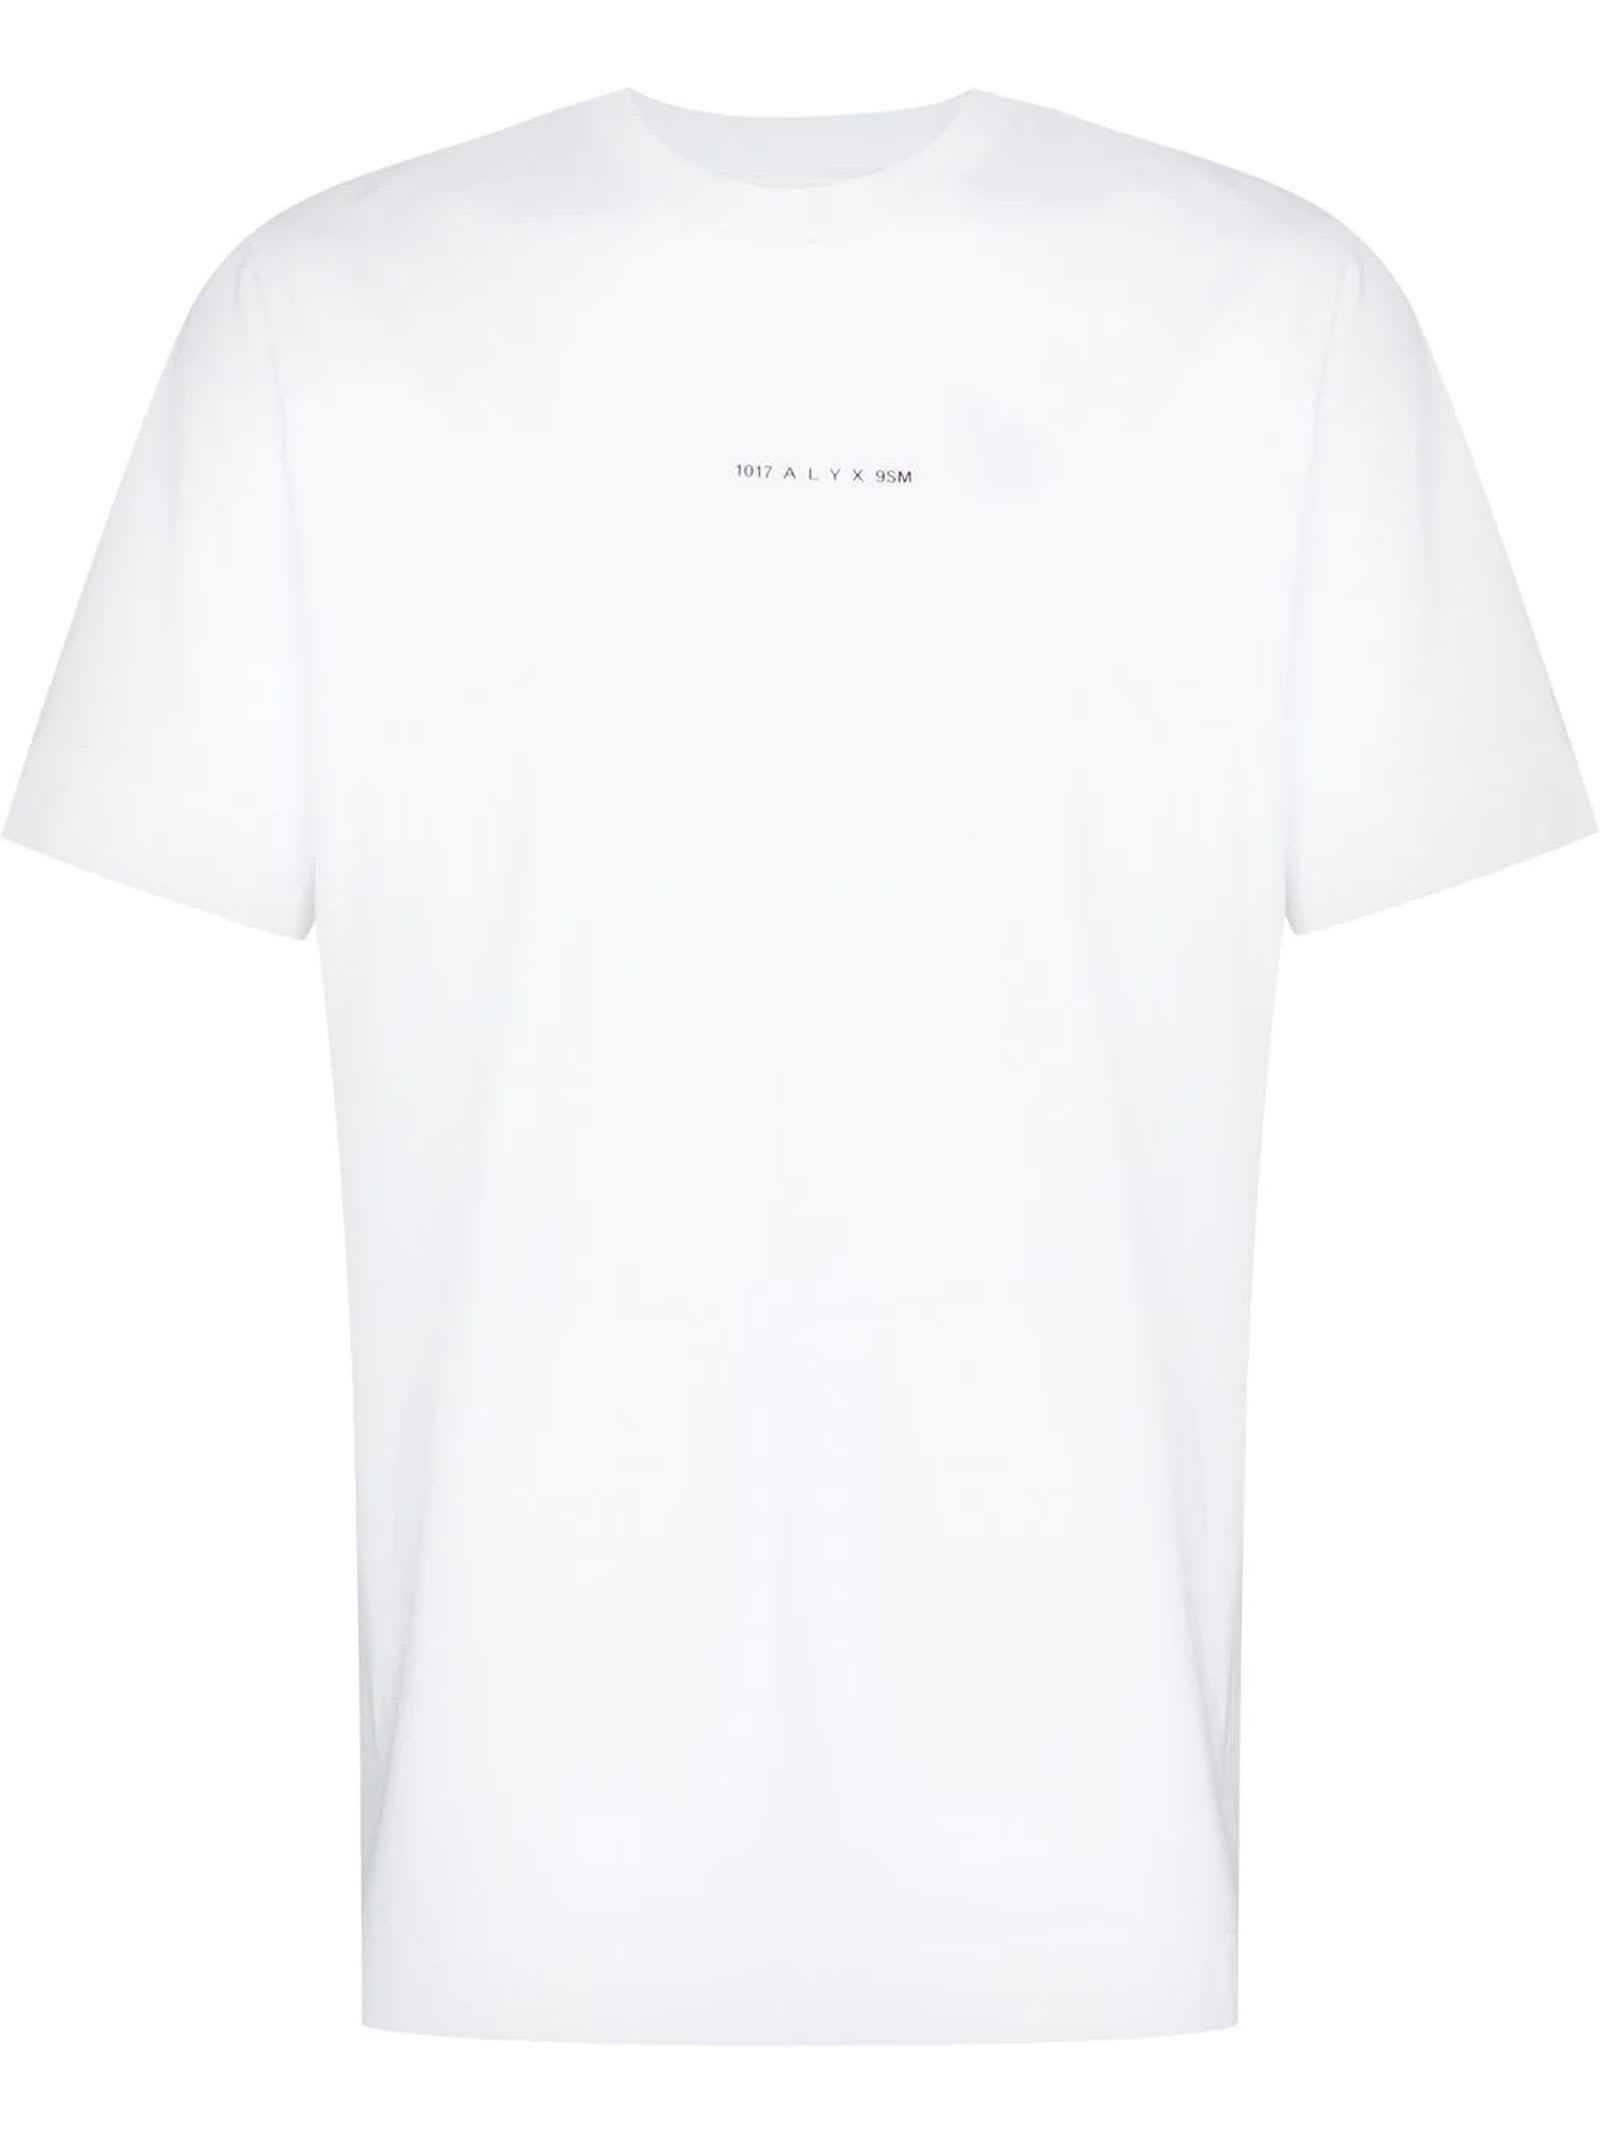 1017 ALYX 9SM White Cotton T-shirt